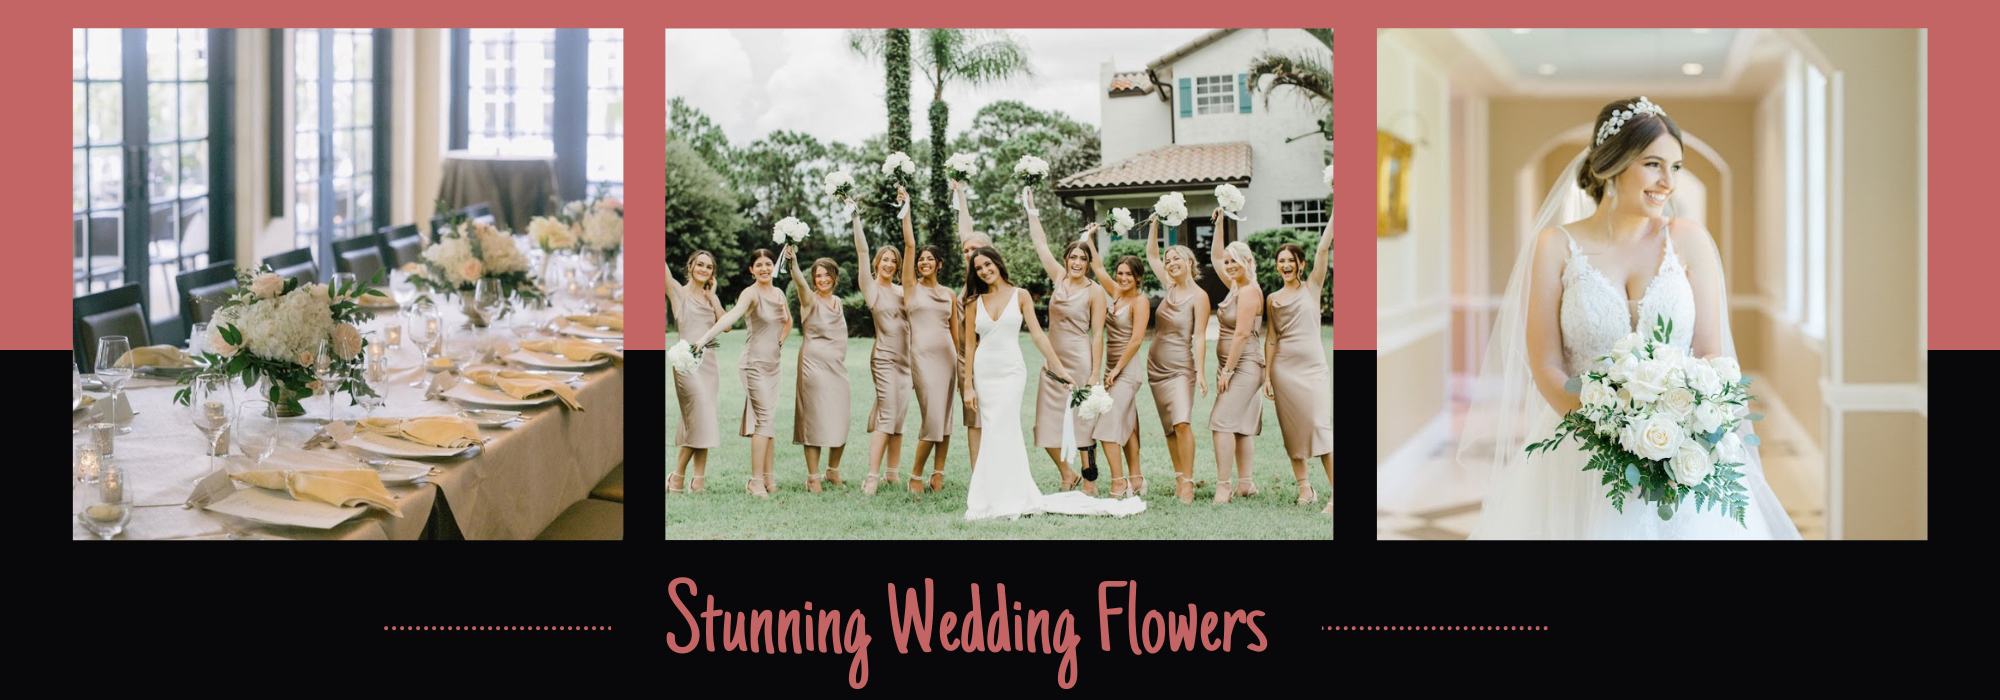 wedding flower collage 